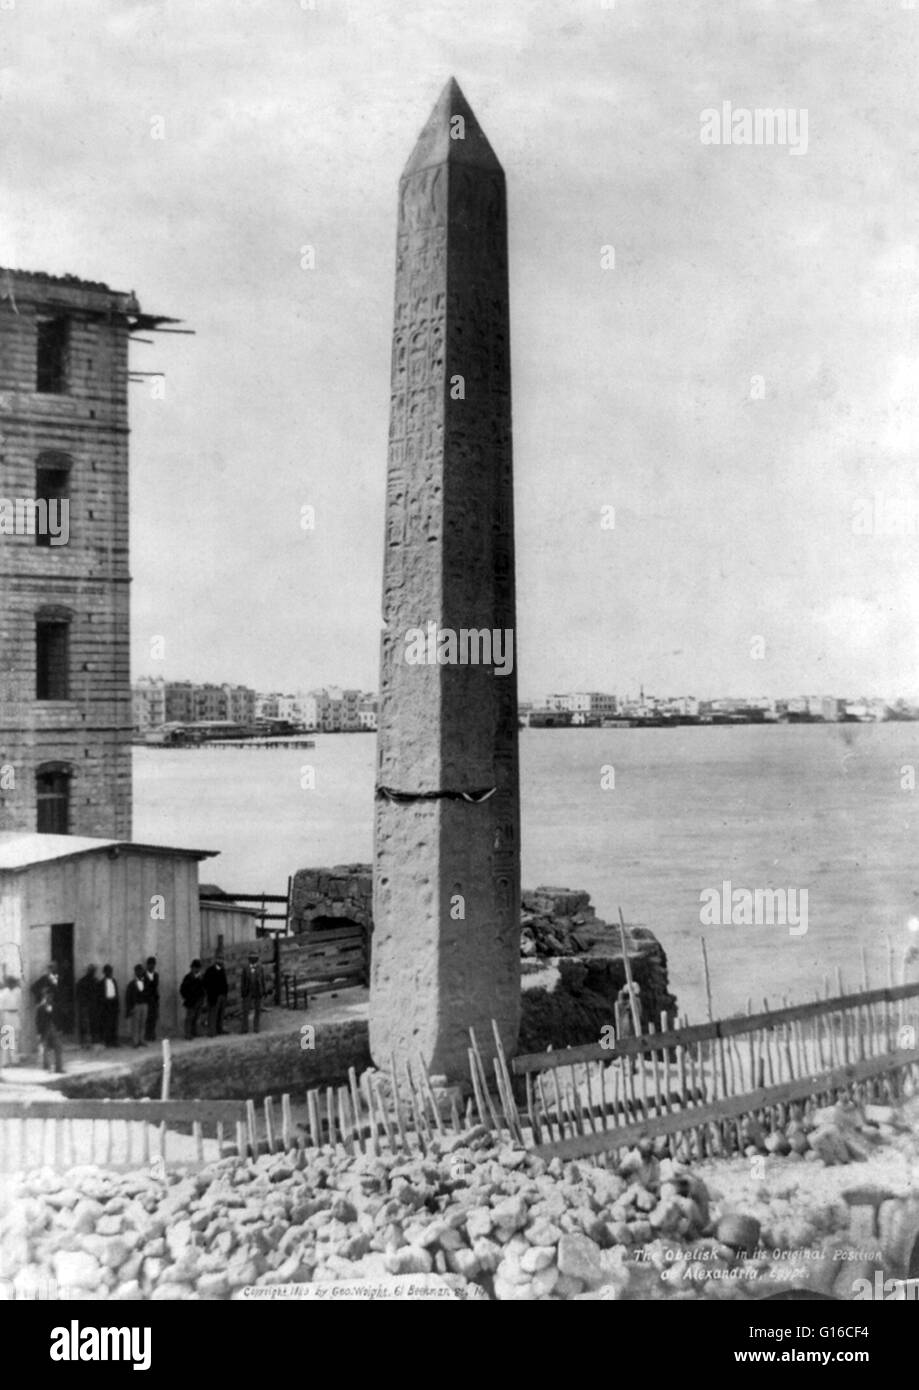 L'obelisco Cleopatra Needle nella sua posizione originale in Alessandria, Egitto. Cleopatra Needle è il nome popolare per ciascuno dei tre antichi obelischi egiziani ri-eretta a Londra, Parigi e New York City durante il XIX secolo. Tutti e tre gli aghi sono Foto Stock